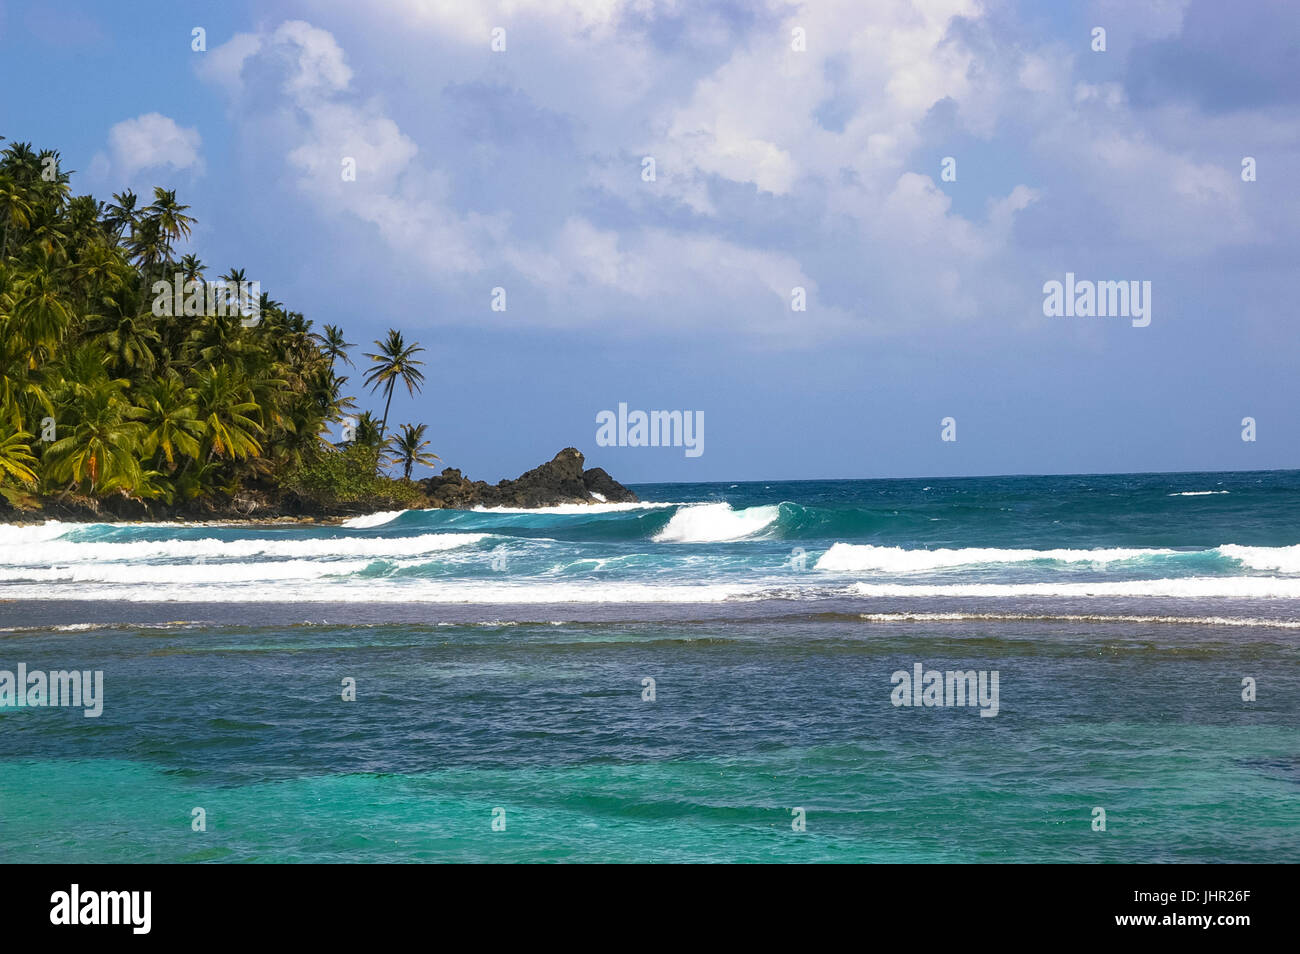 Isla Grande isla de la costa Caribe de Panamá Foto de stock